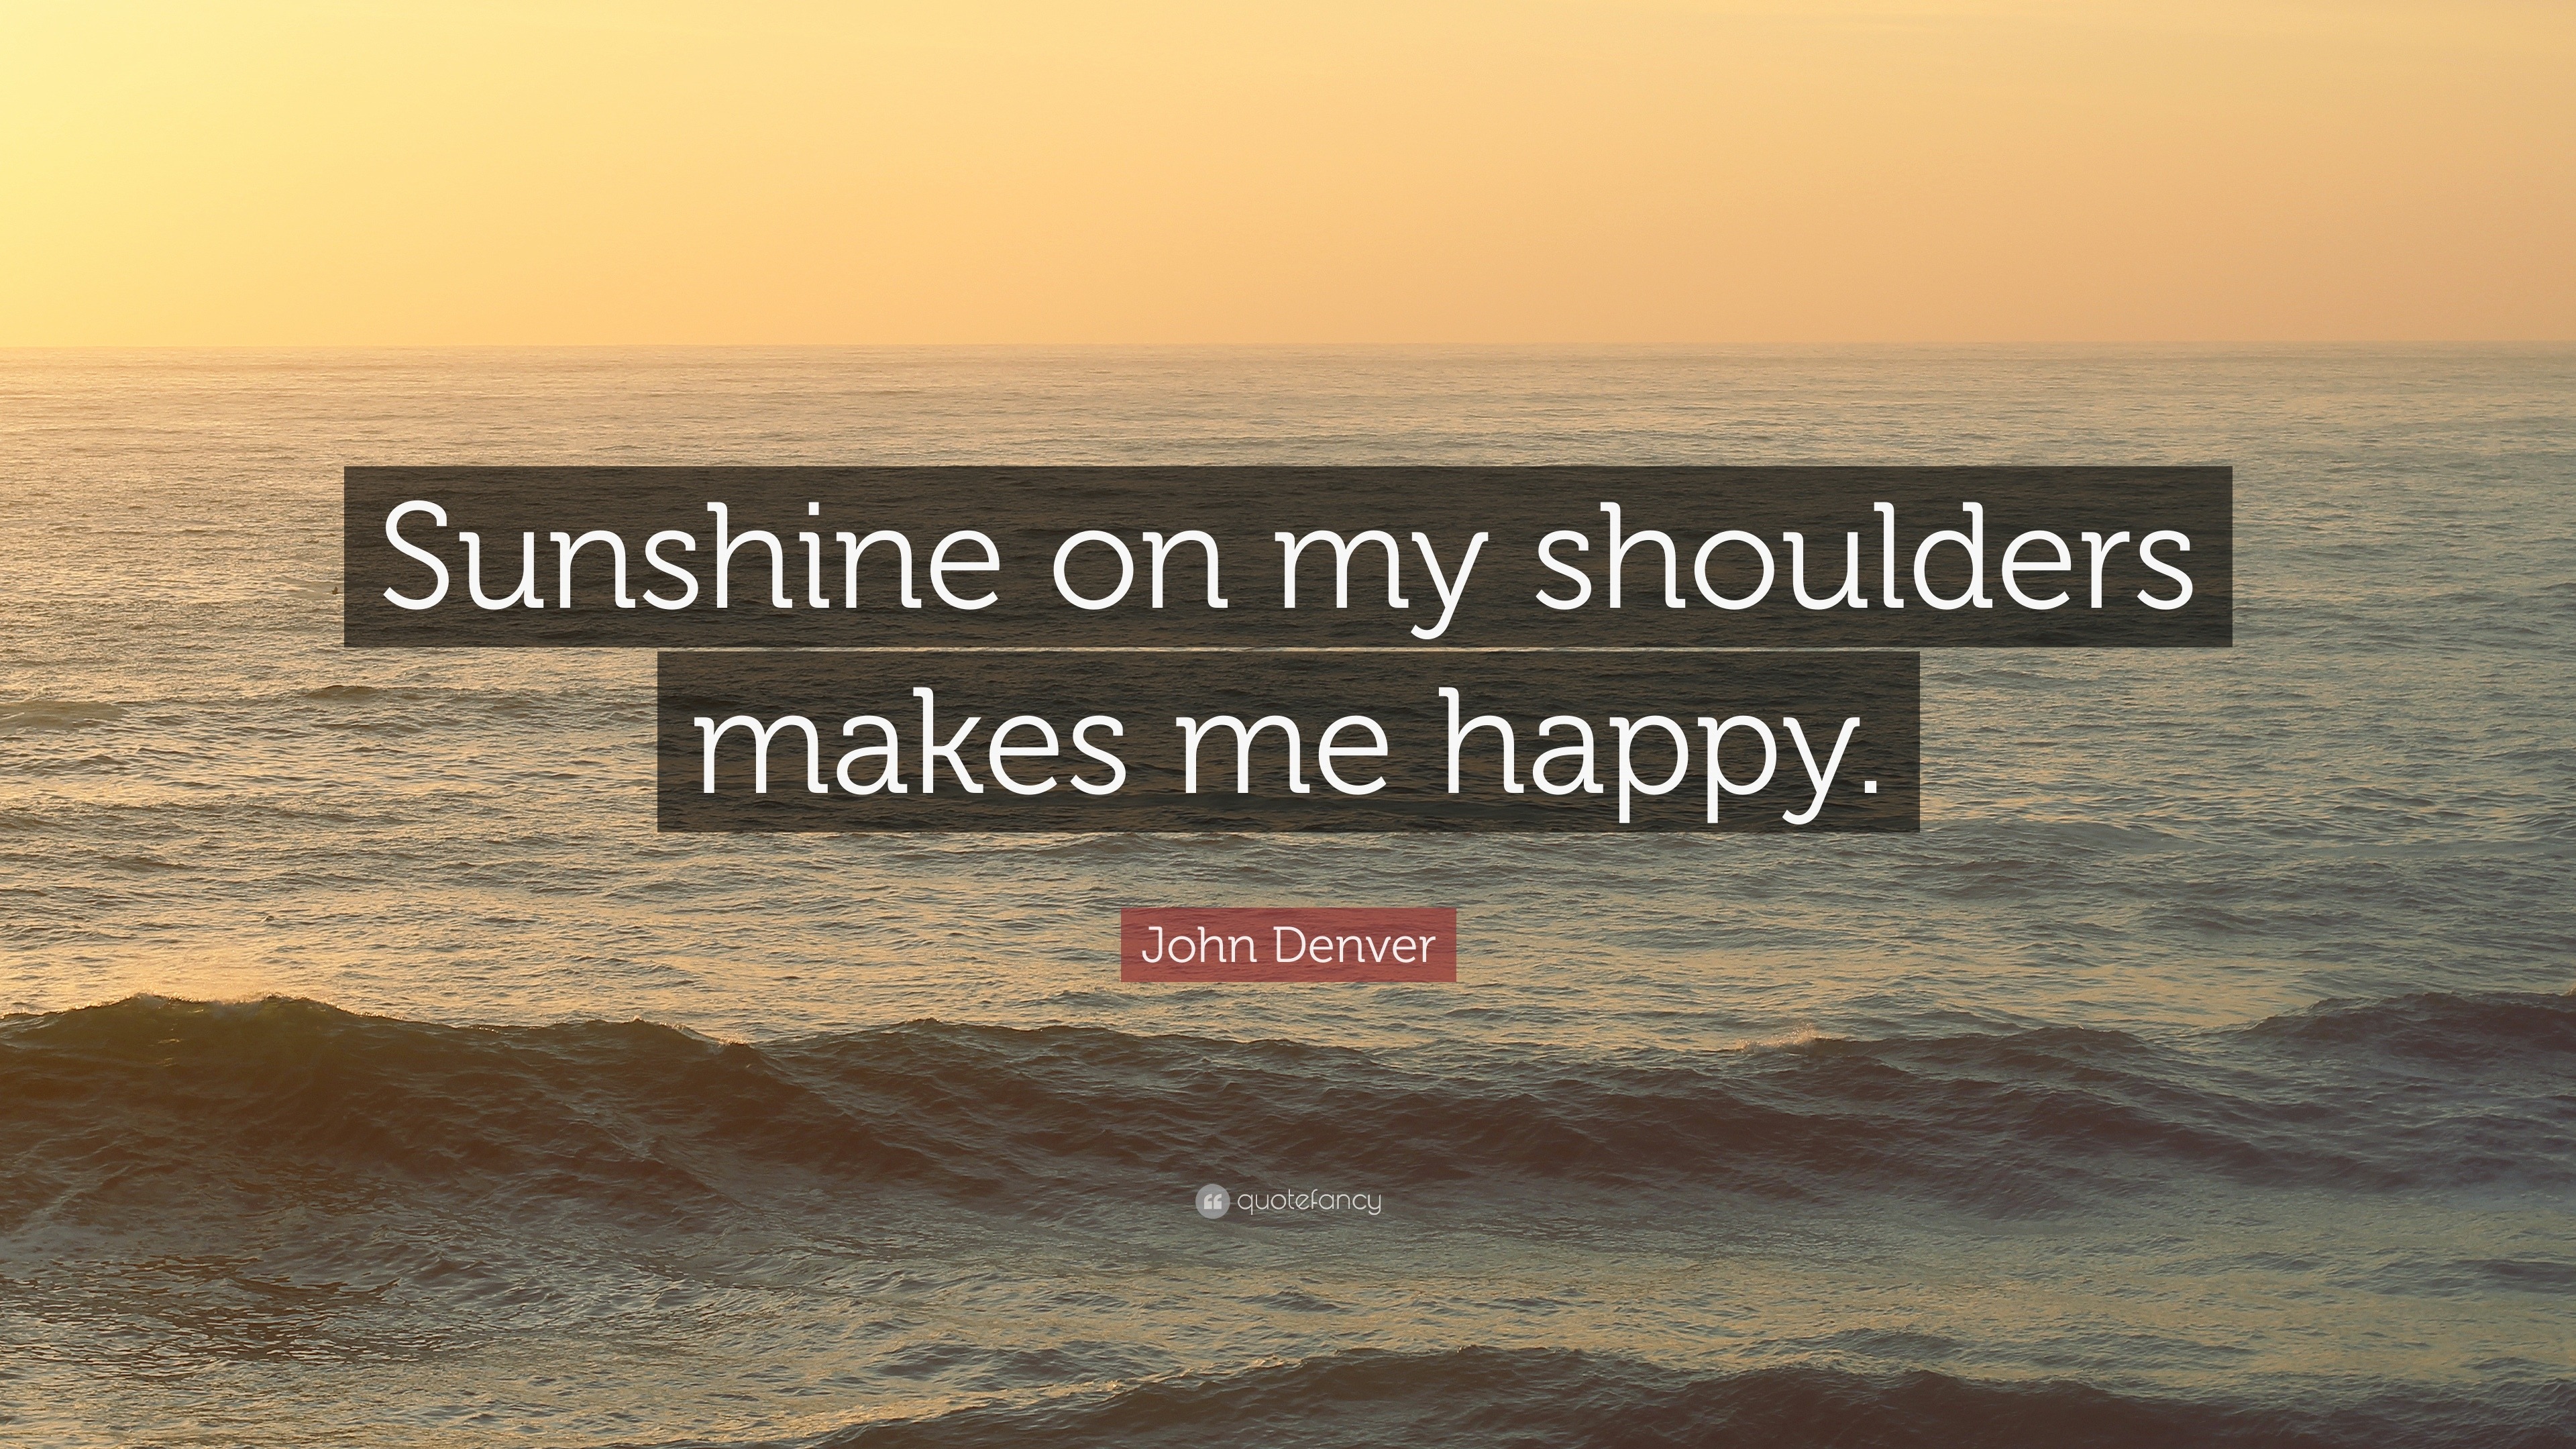 John Denver - Annie's Song  John denver quotes, Music quotes, John denver